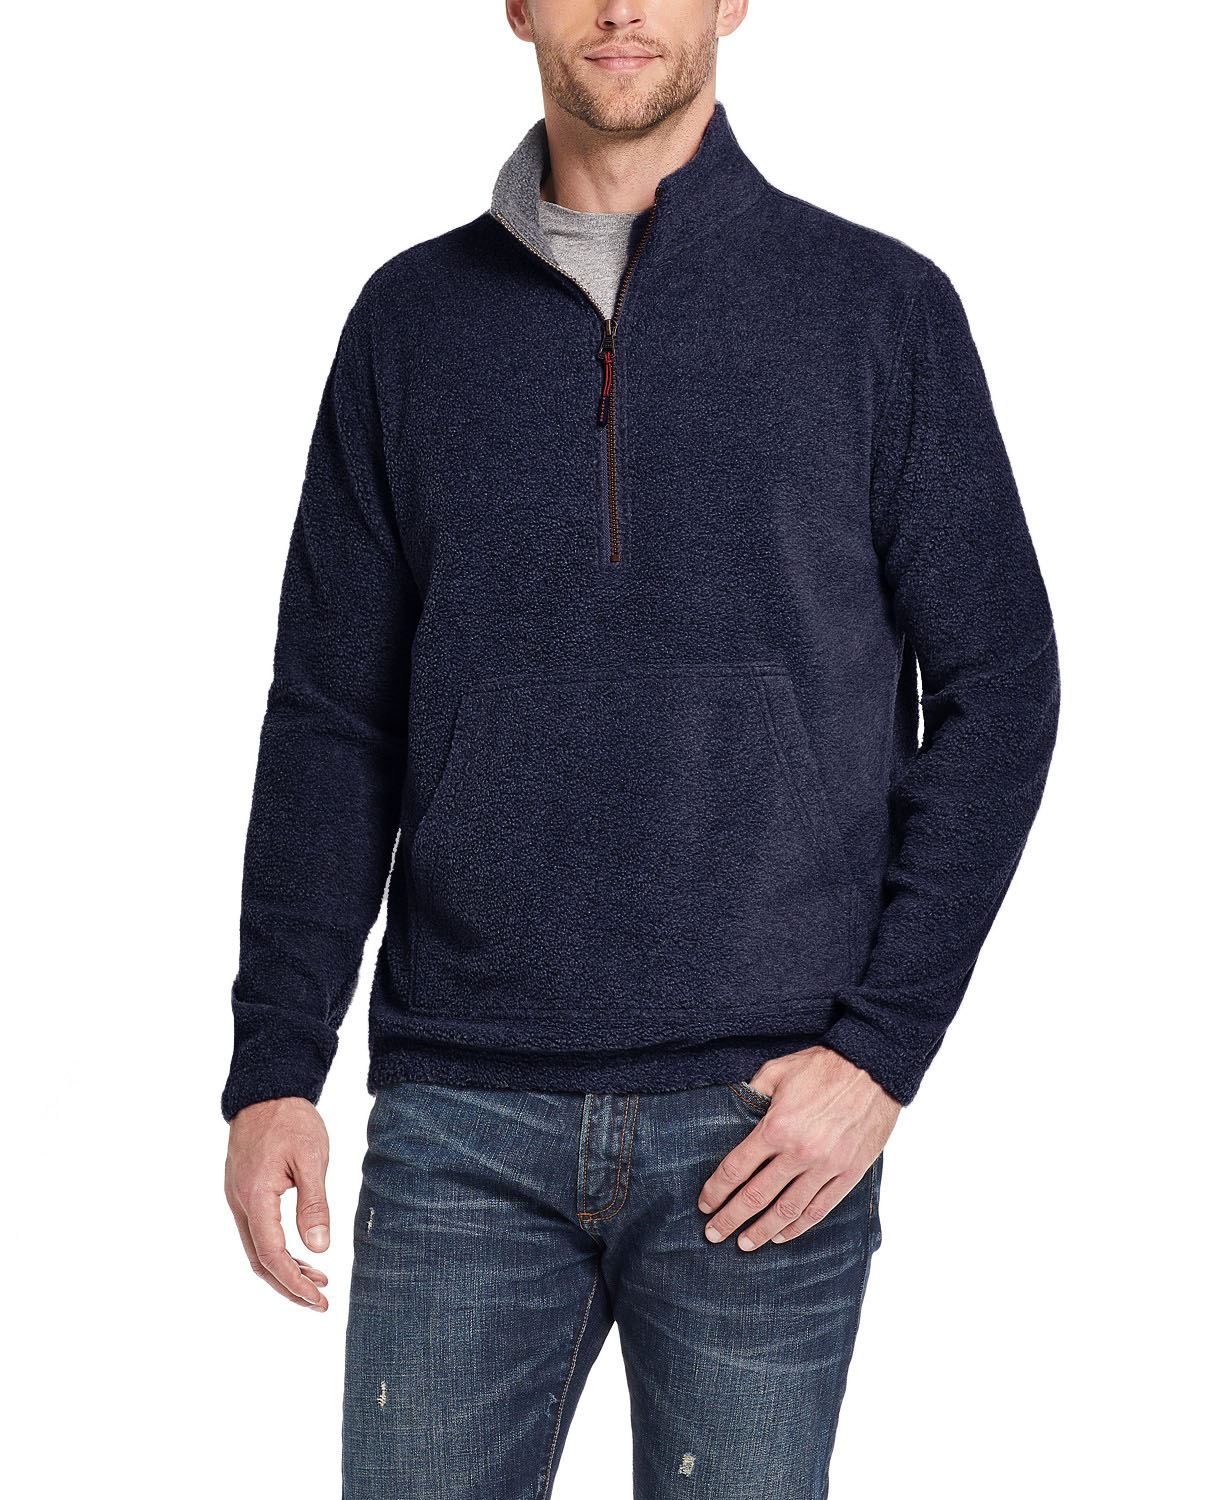 Weatherproof Vintage Men's Quarter-Zip Pullover Sweater Navy Size 2 ...